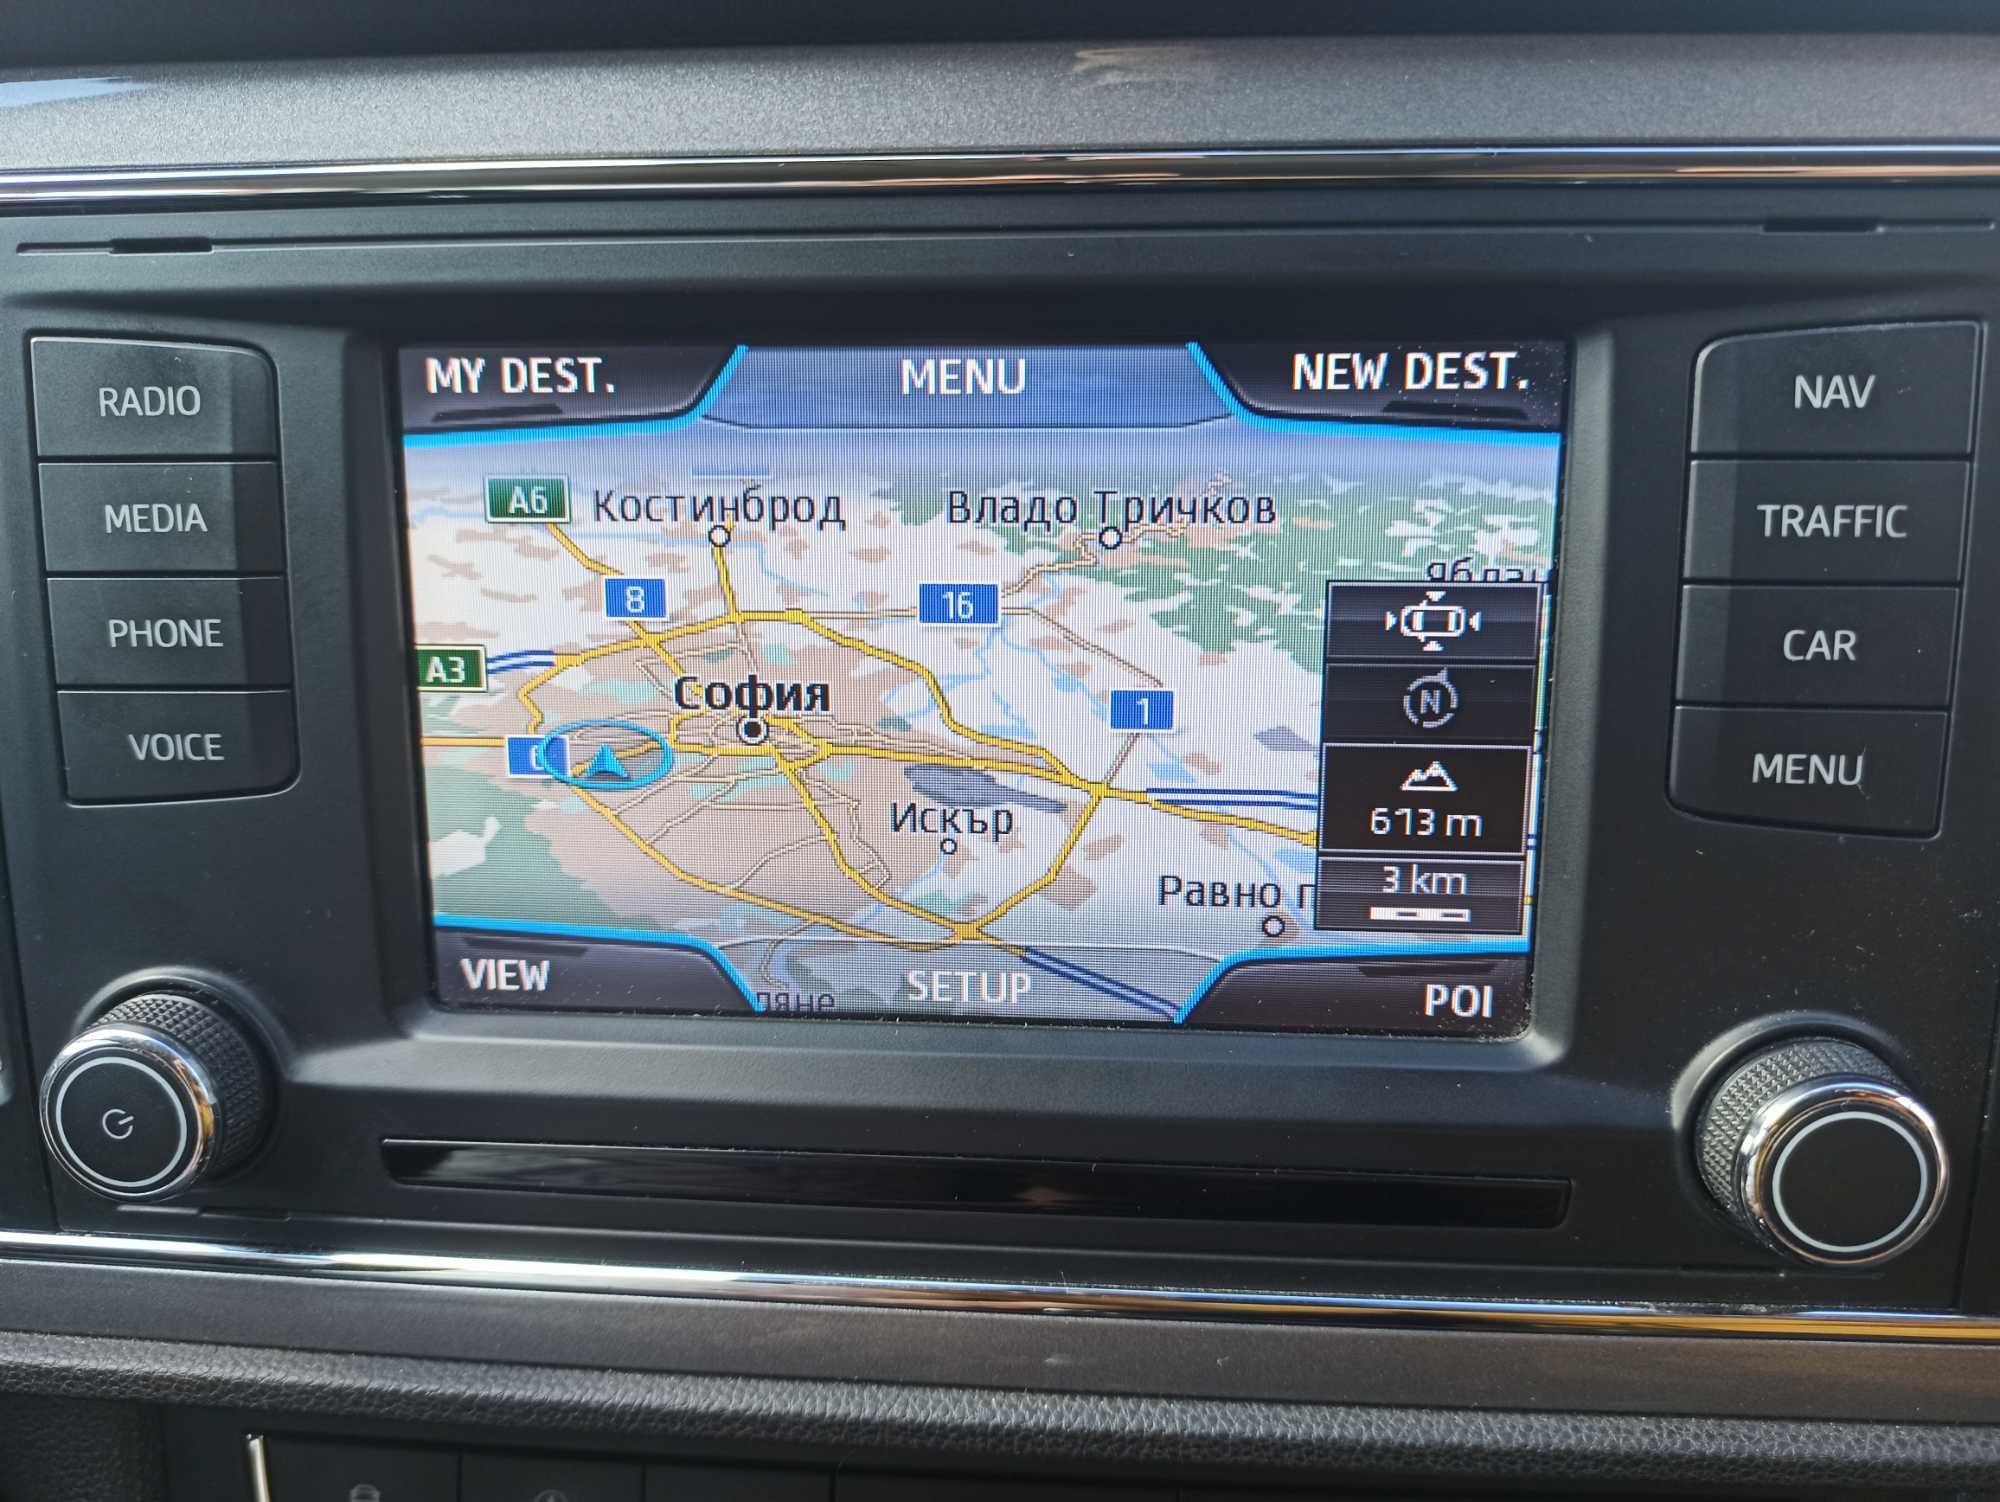 2024 SD карта за навигация Сеат 5FO SEAT Leon Altea  Ibiza Toledo MIB1